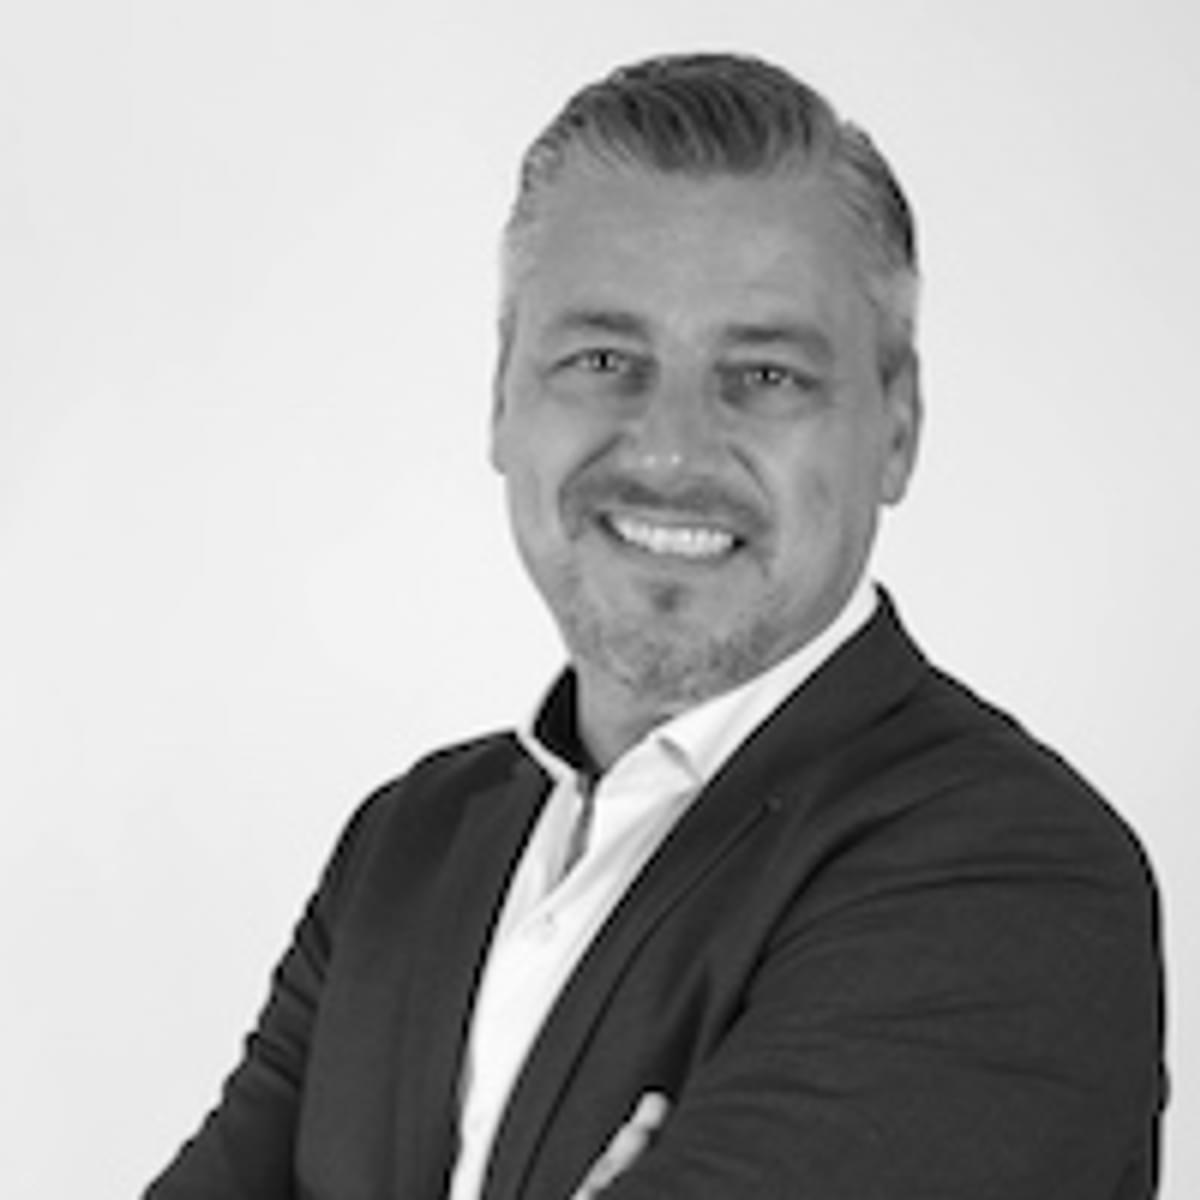 Jaco van der Sman benoemd tot channel manager bij Fortinet image